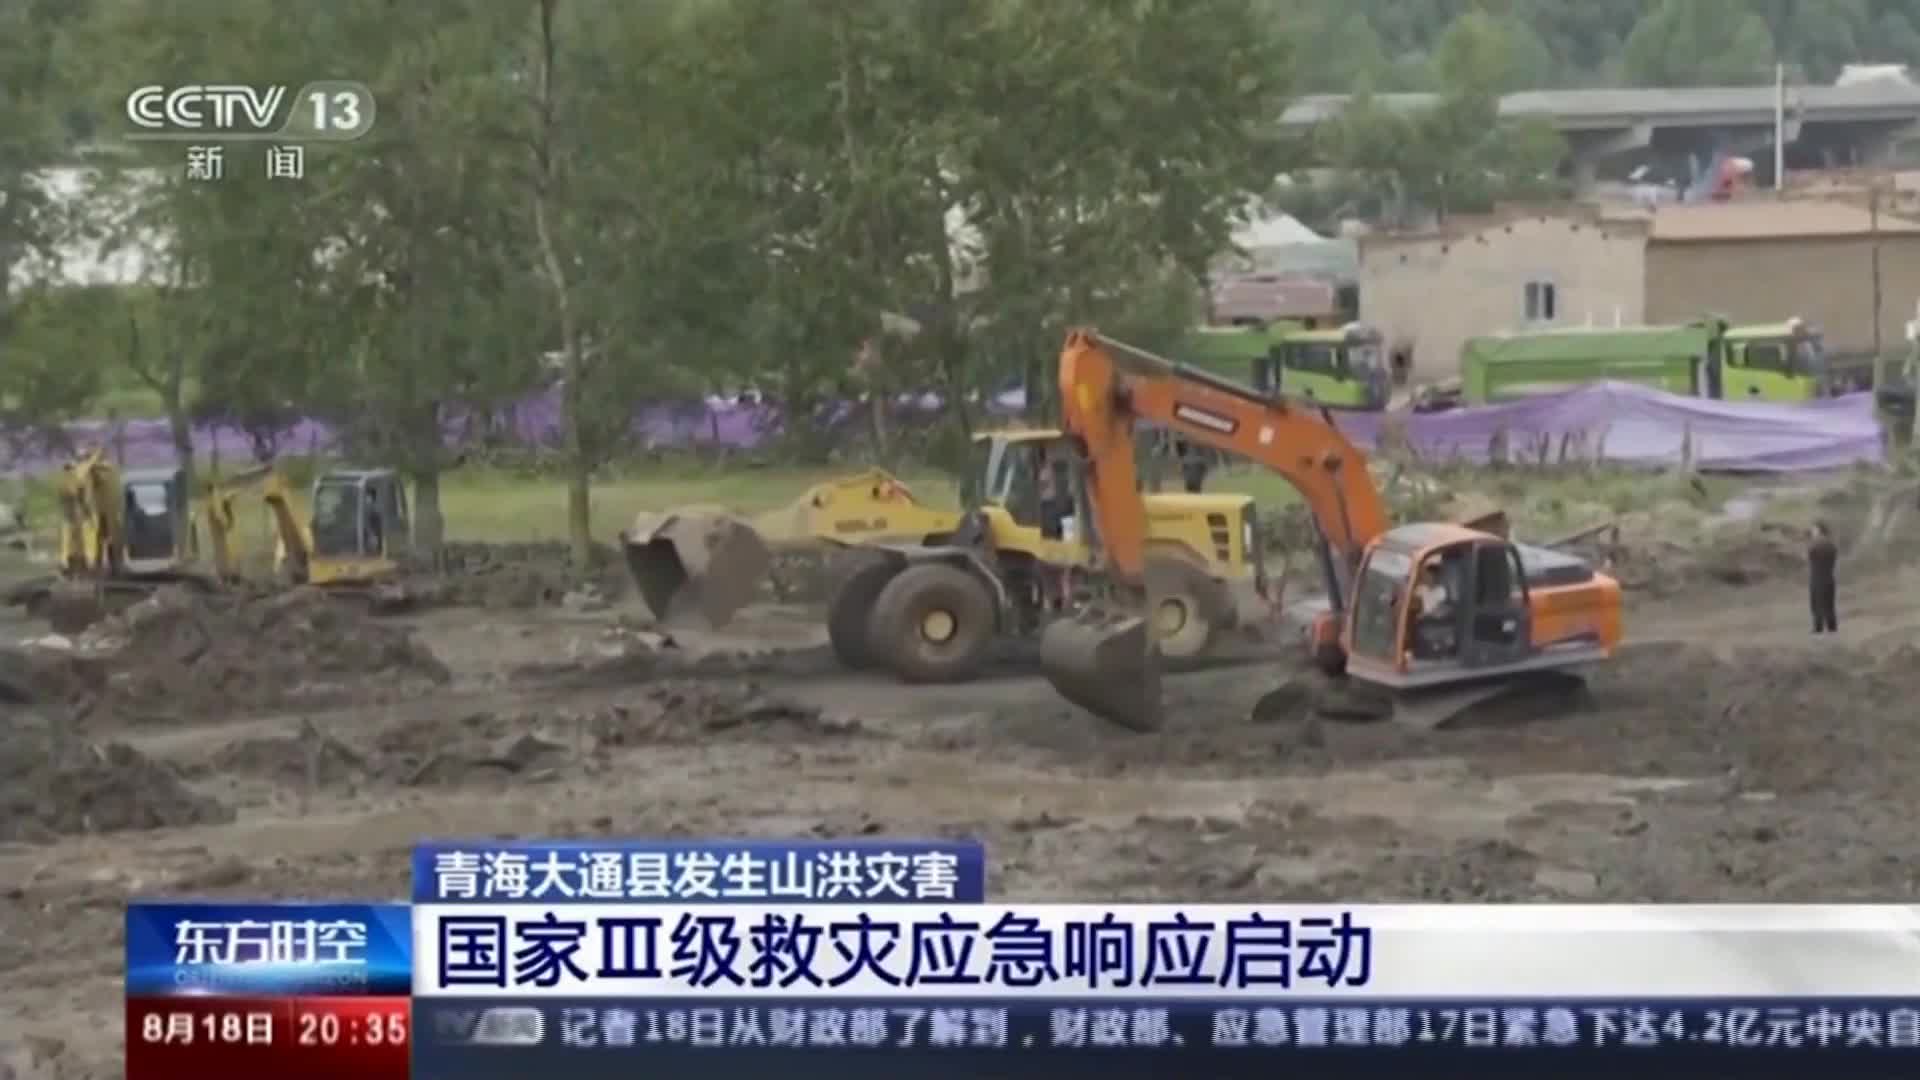 17 души загинаха при последните наводнения в Китай